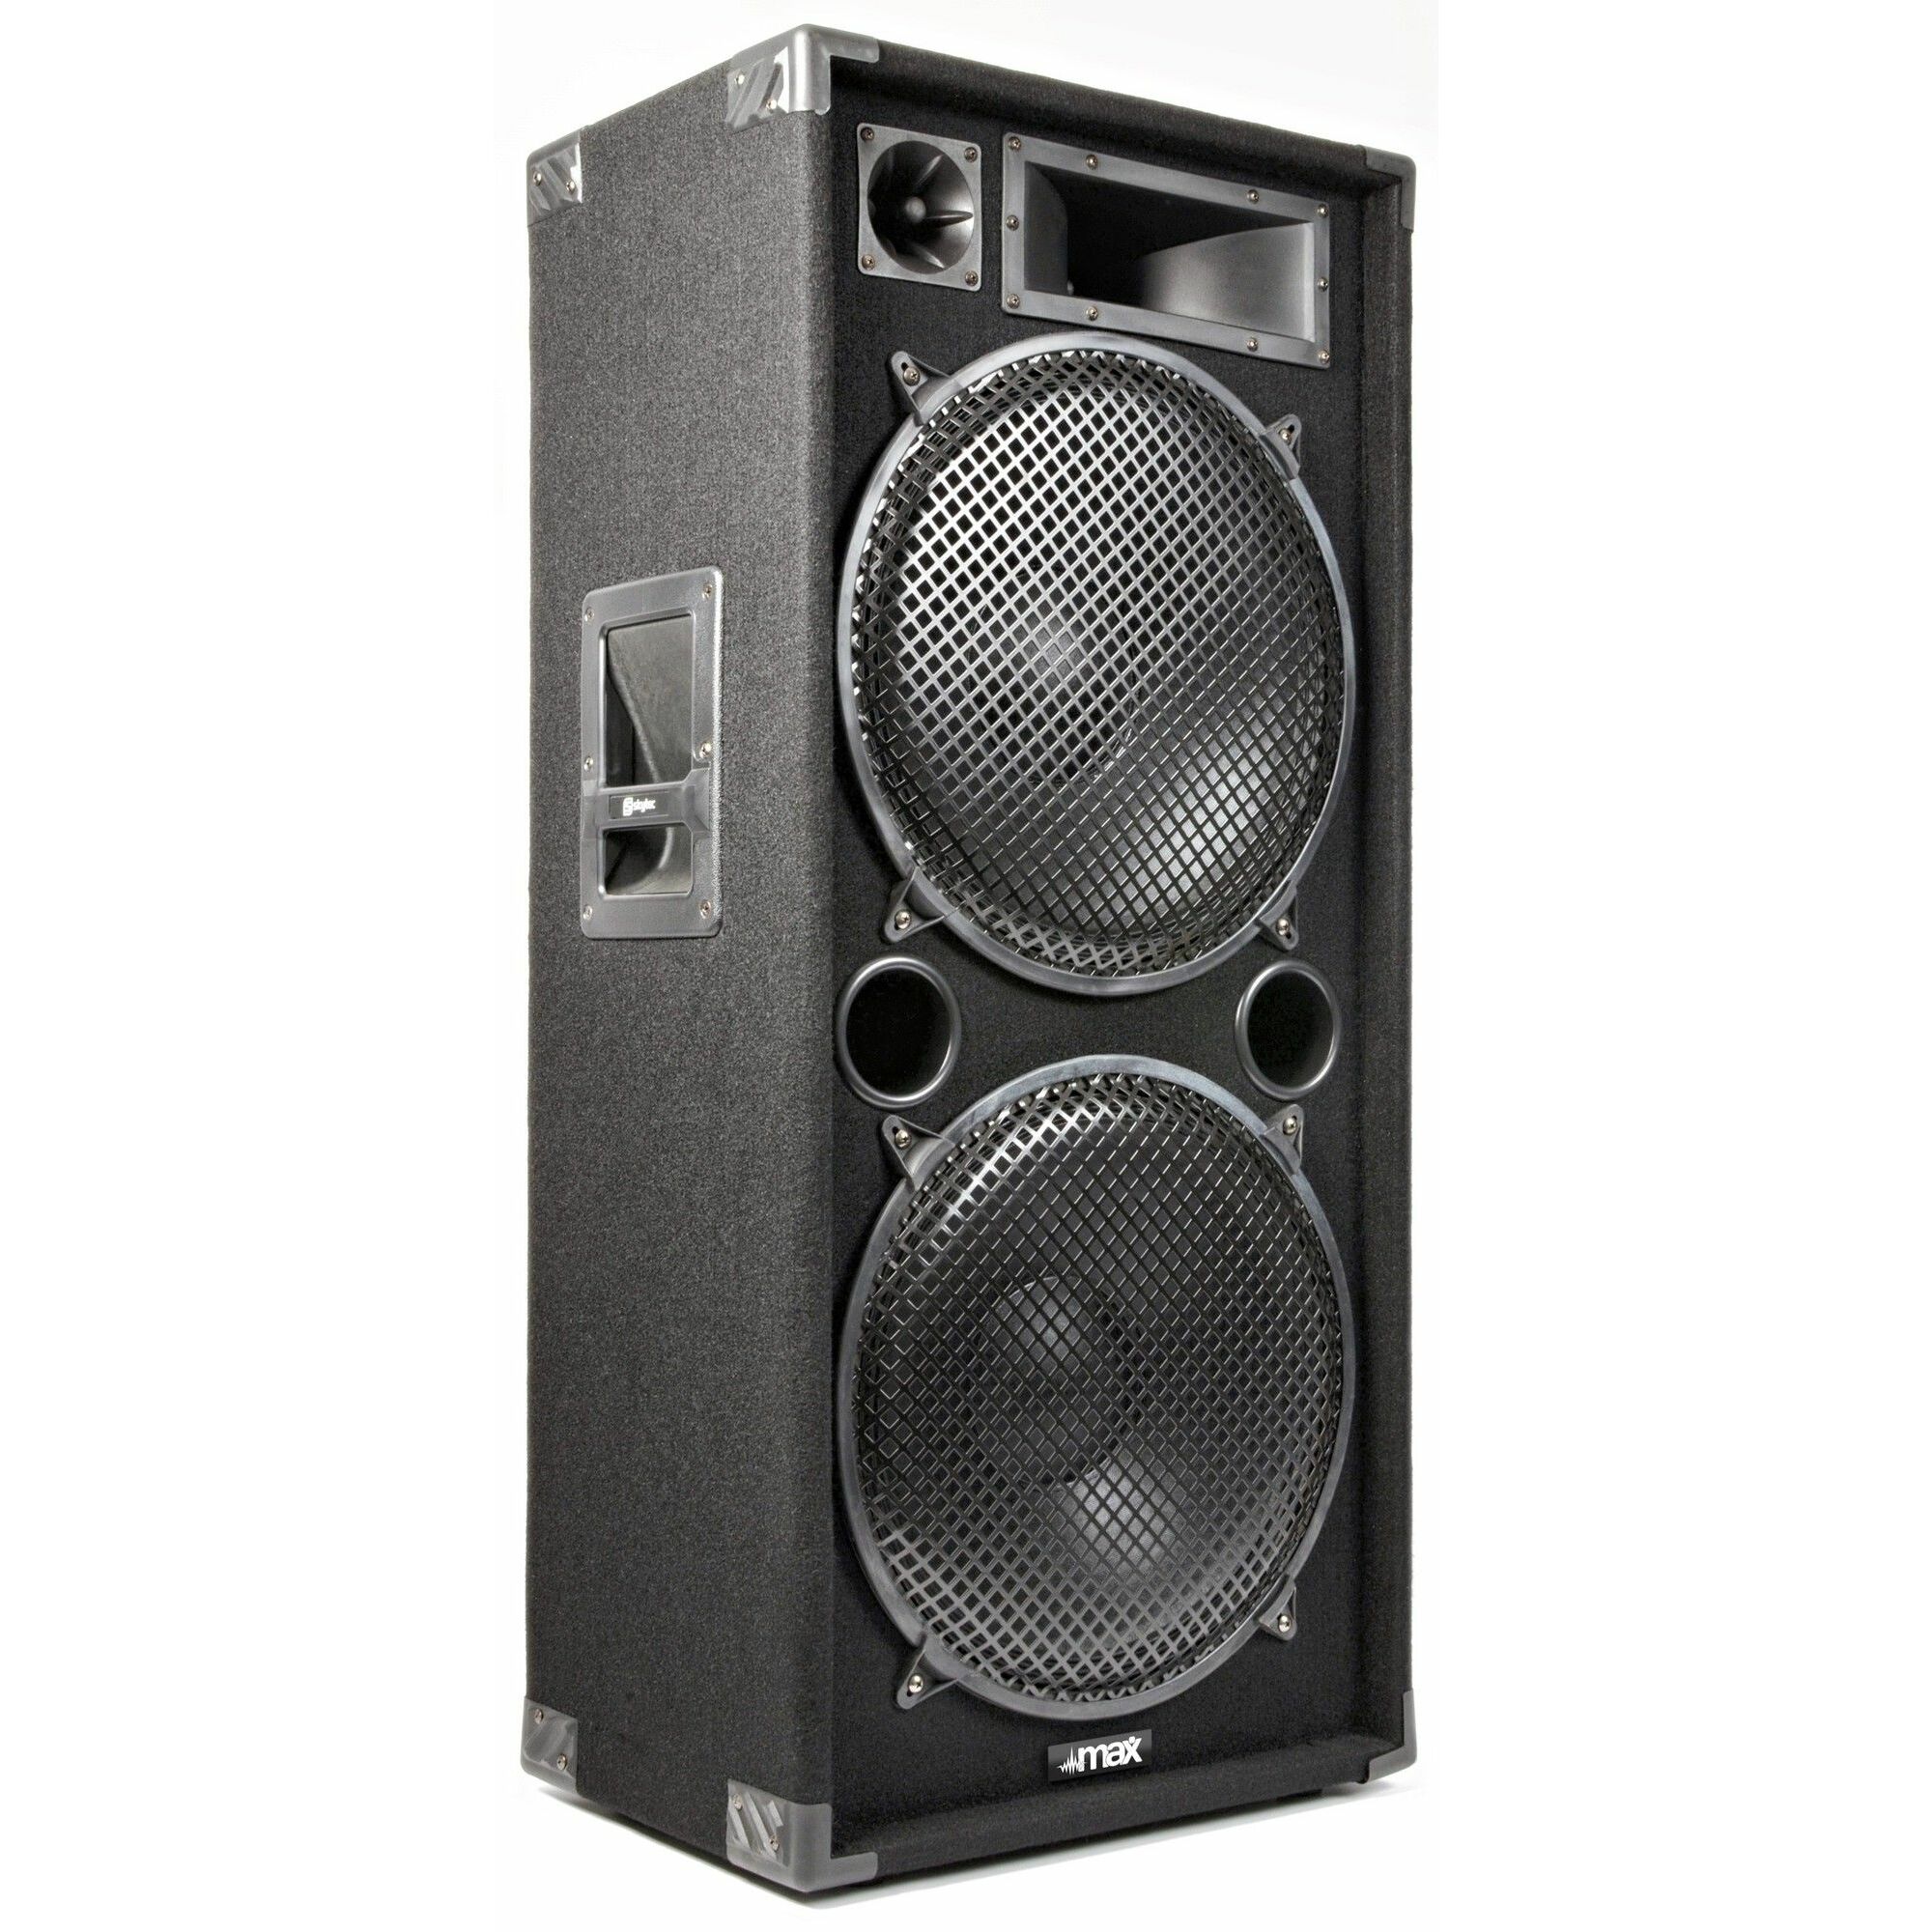 Retourdeal - MAX Disco Speaker MAX215 2000W 15"